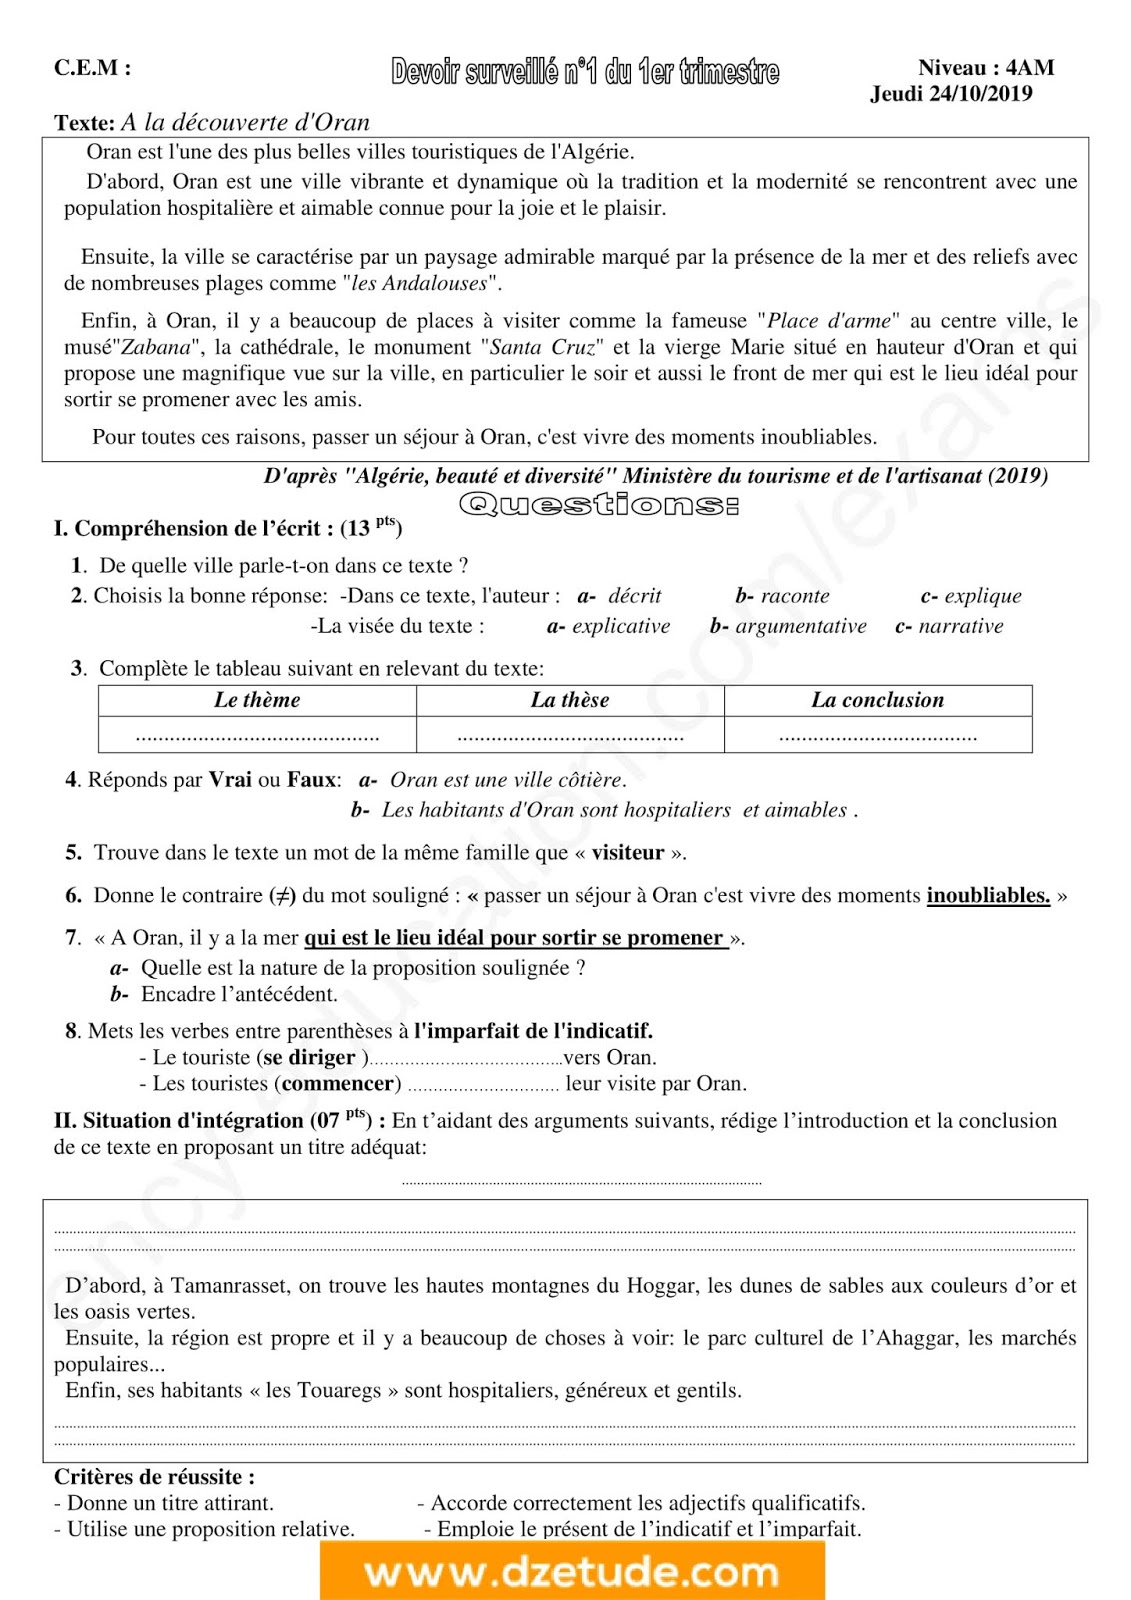 فرض الفصل الأول في اللغة الفرنسية للسنة الرابعة متوسط - الجيل الثاني نموذج 7